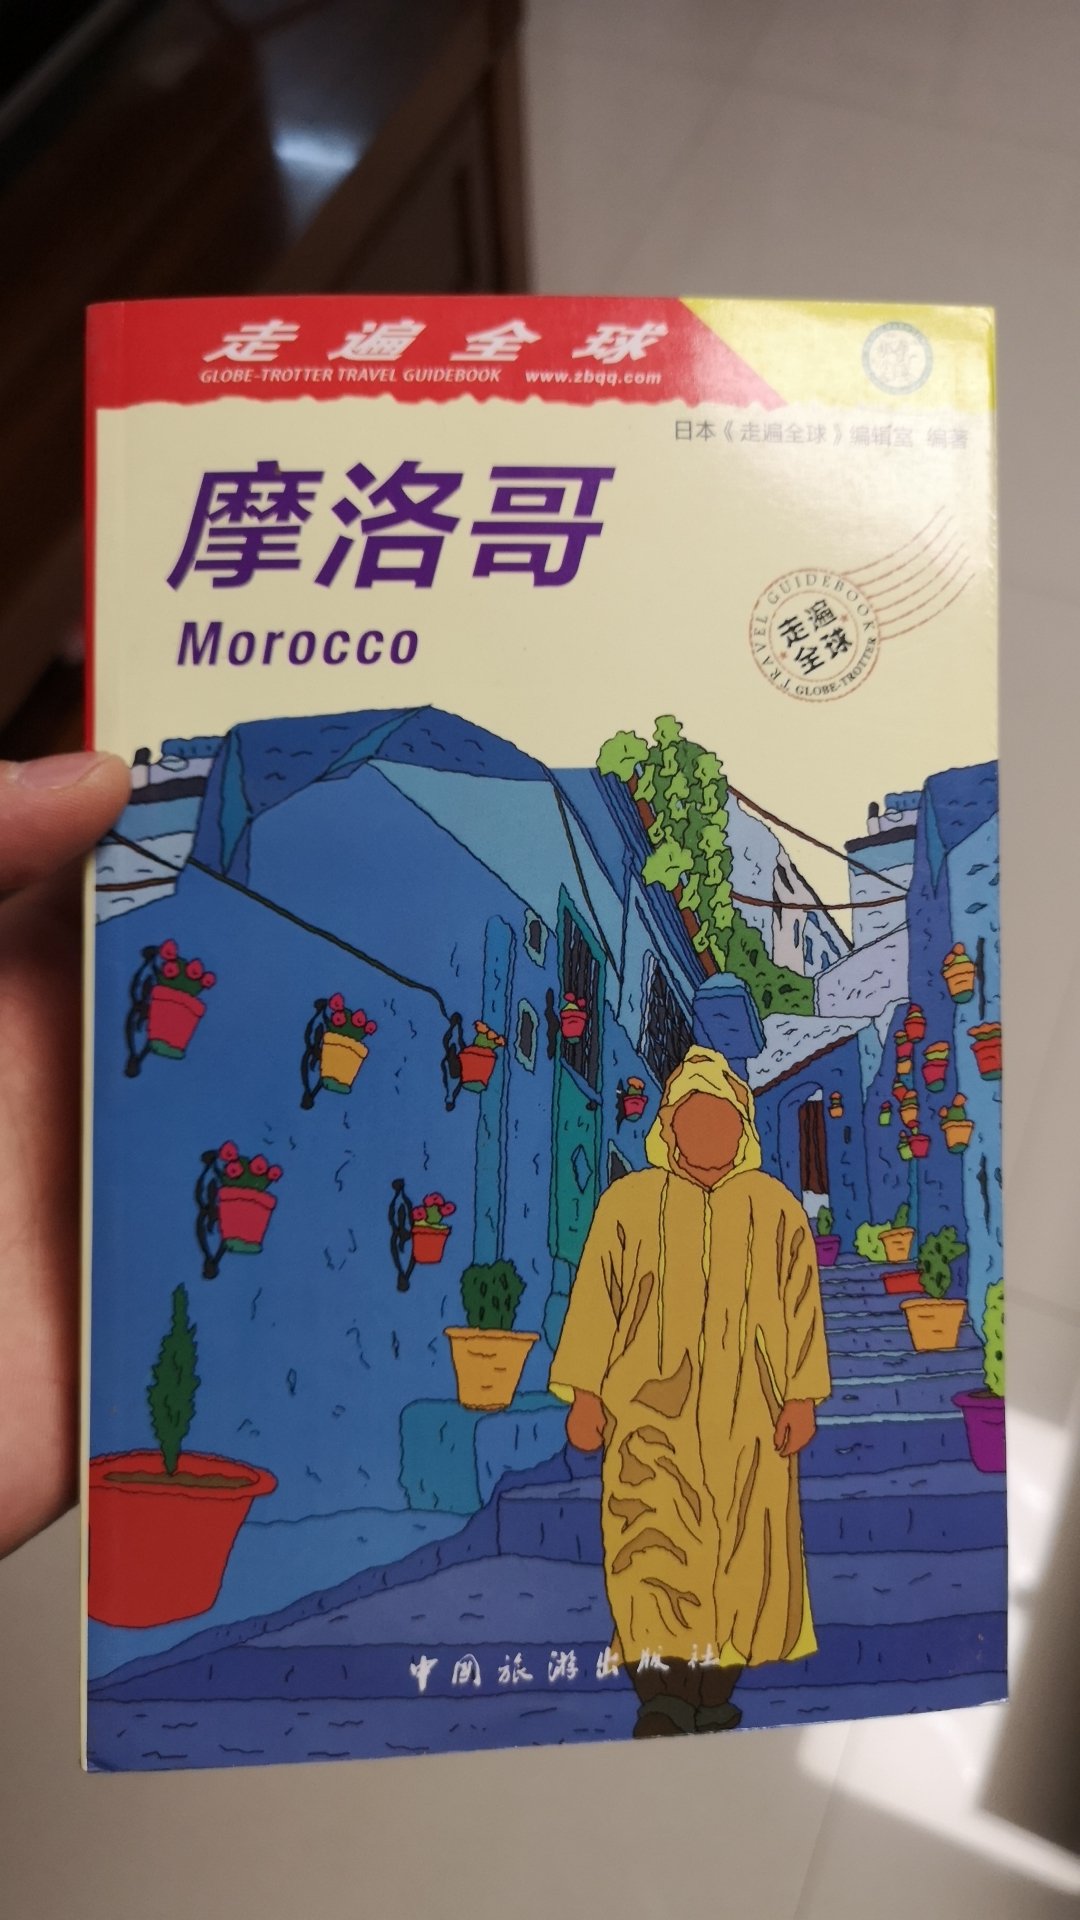 摩洛哥真是一个去过会感到非常失望的国家，虽然是免签，但是大家不要抱太多希望。